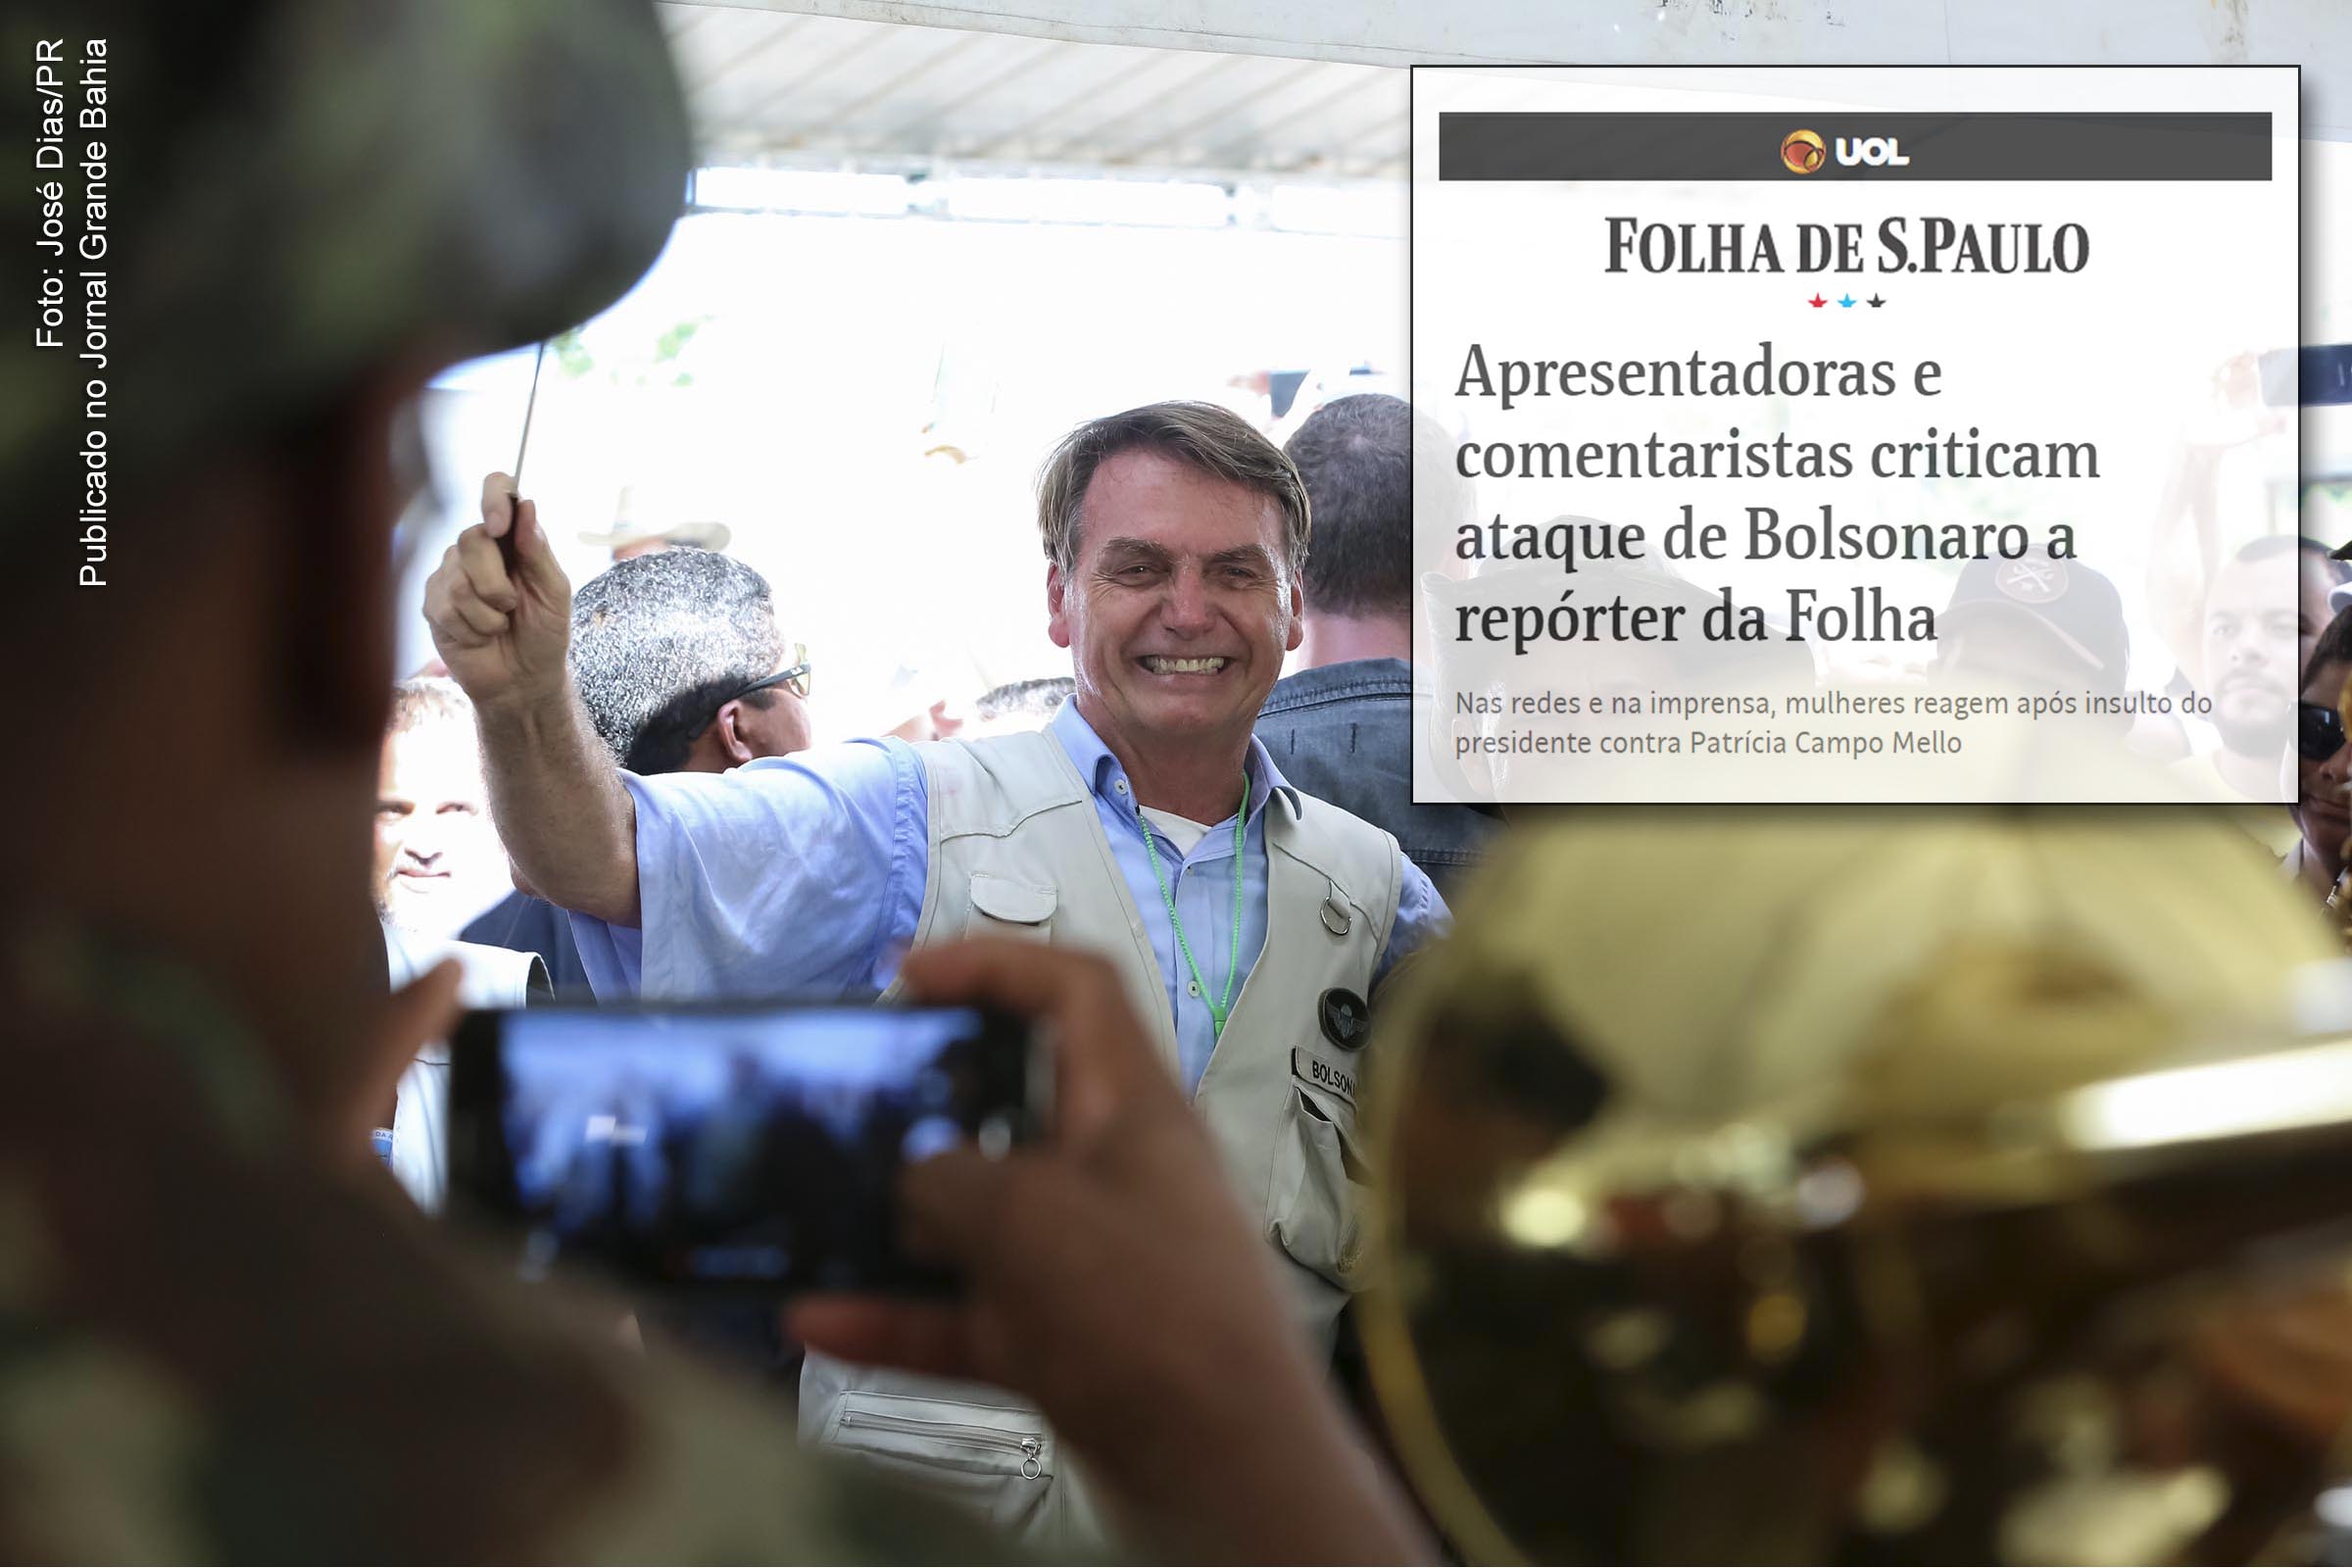 Extremista de direita Jair Bolsonaro ataca a democracia e os direitos humanos. Presidente é vulgar no pensamento e néscio na gestão pública.